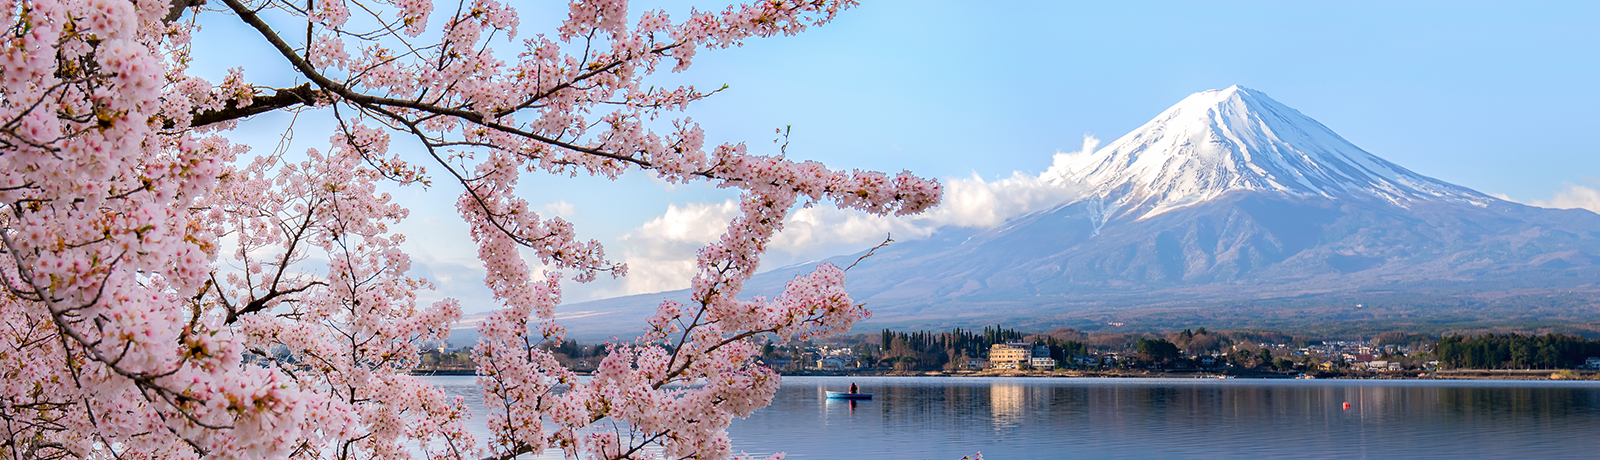 alt="Mount fuji at Lake kawaguchiko with cherry blossom in Yamanashi near Tokyo, Japan"